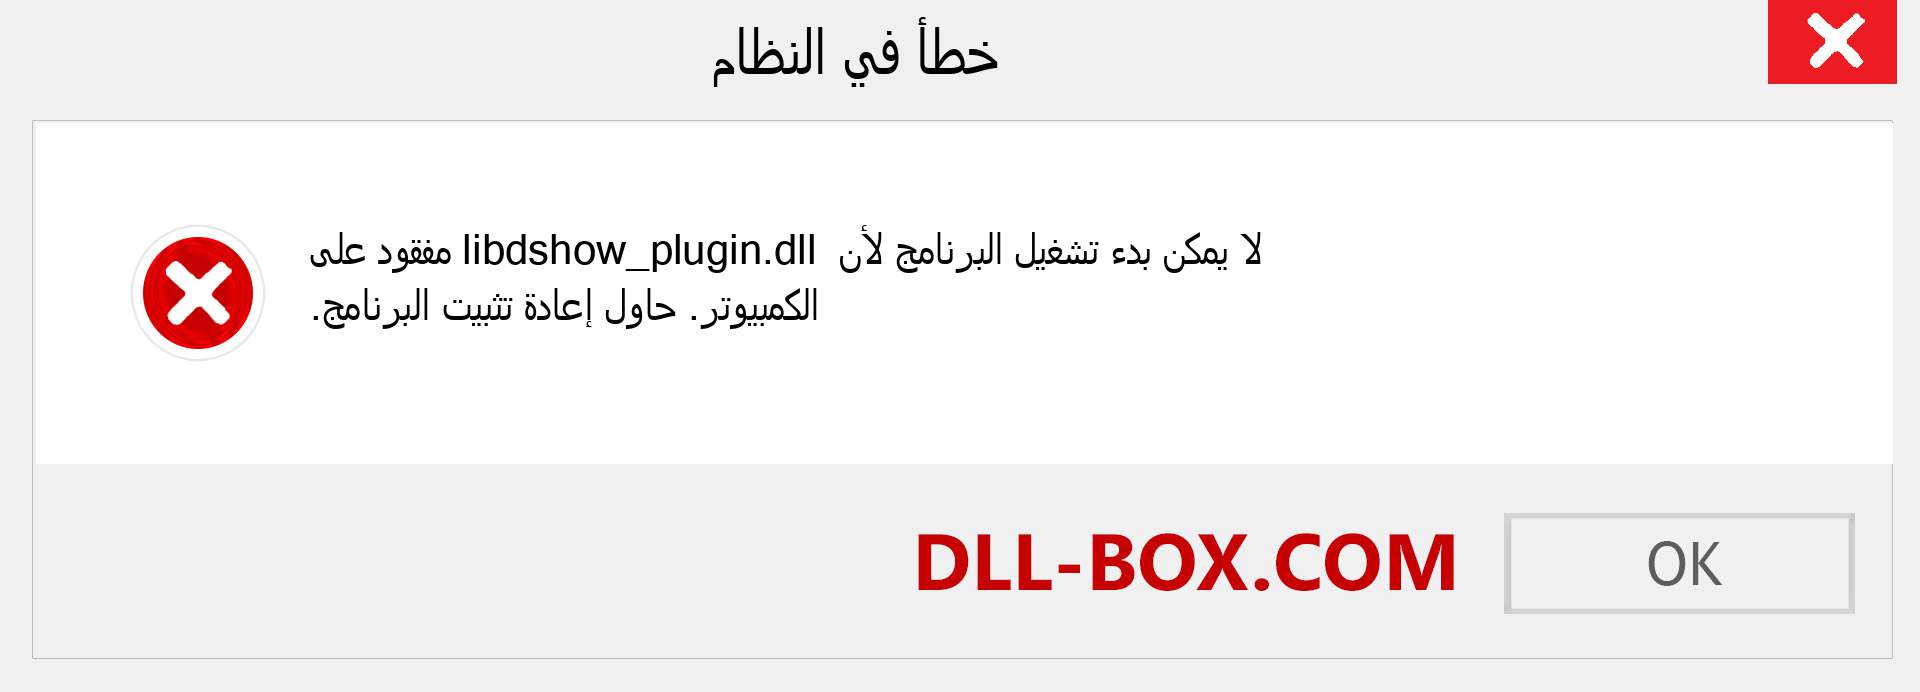 ملف libdshow_plugin.dll مفقود ؟. التنزيل لنظام التشغيل Windows 7 و 8 و 10 - إصلاح خطأ libdshow_plugin dll المفقود على Windows والصور والصور